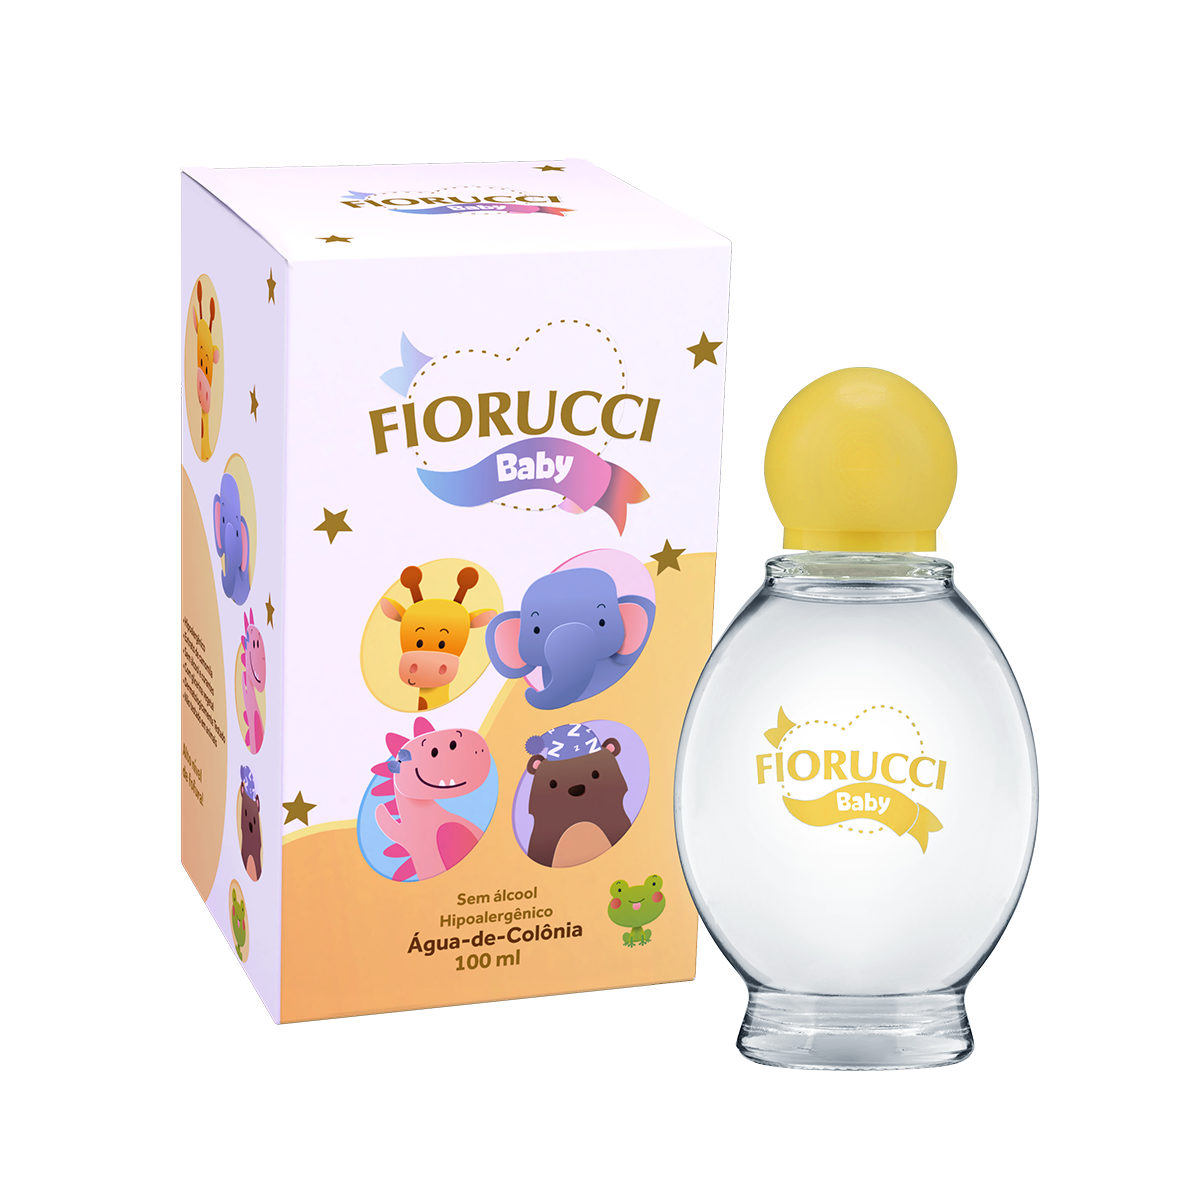 Fiorucci - Água-de-Colônia - Fiorucci Baby - 100 ml